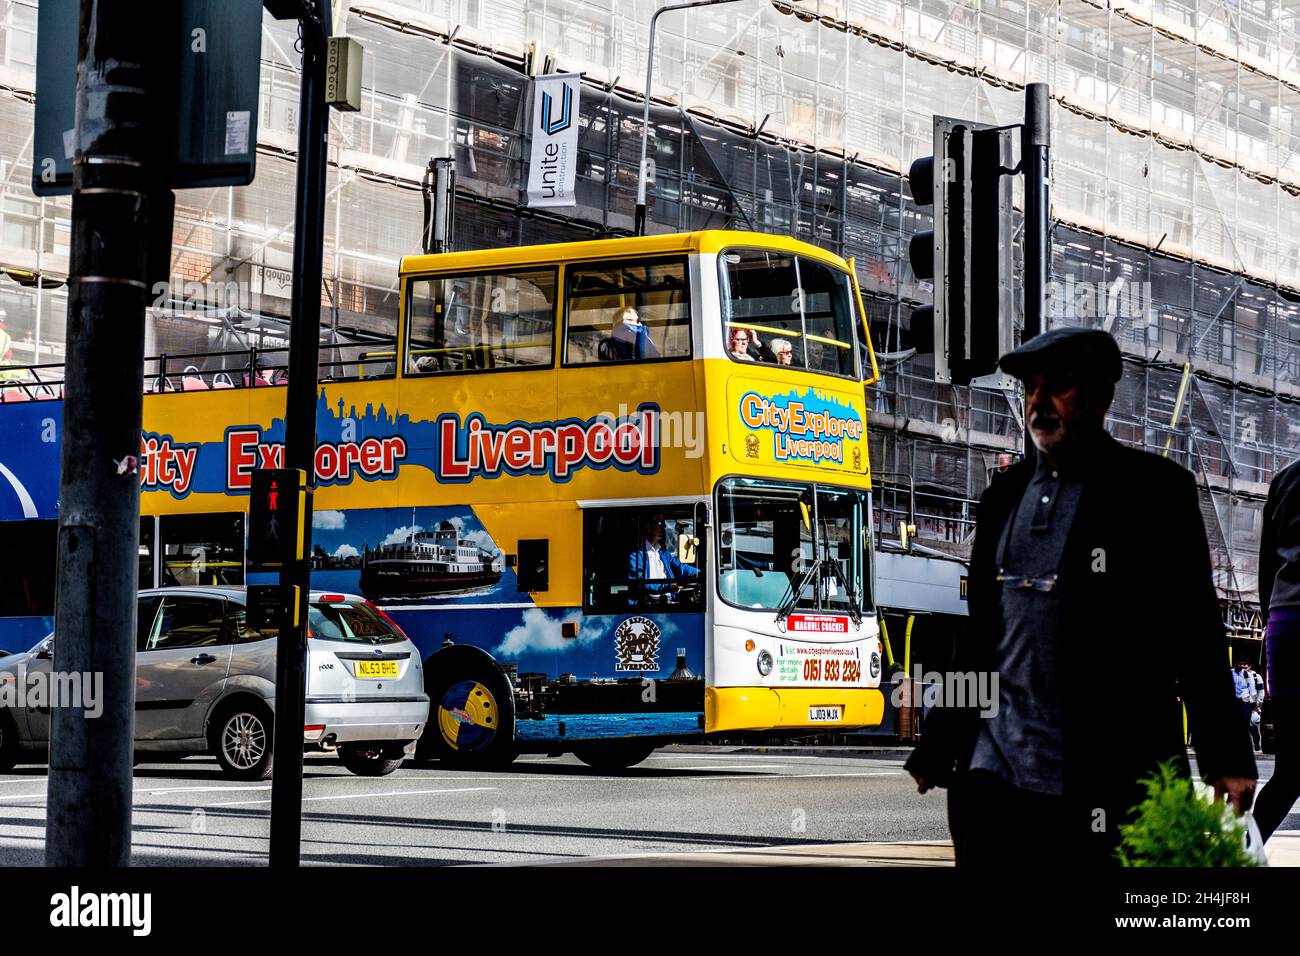 City Explorer Liverpool. Turisti in autobus turistico nel centro della città. Foto Stock